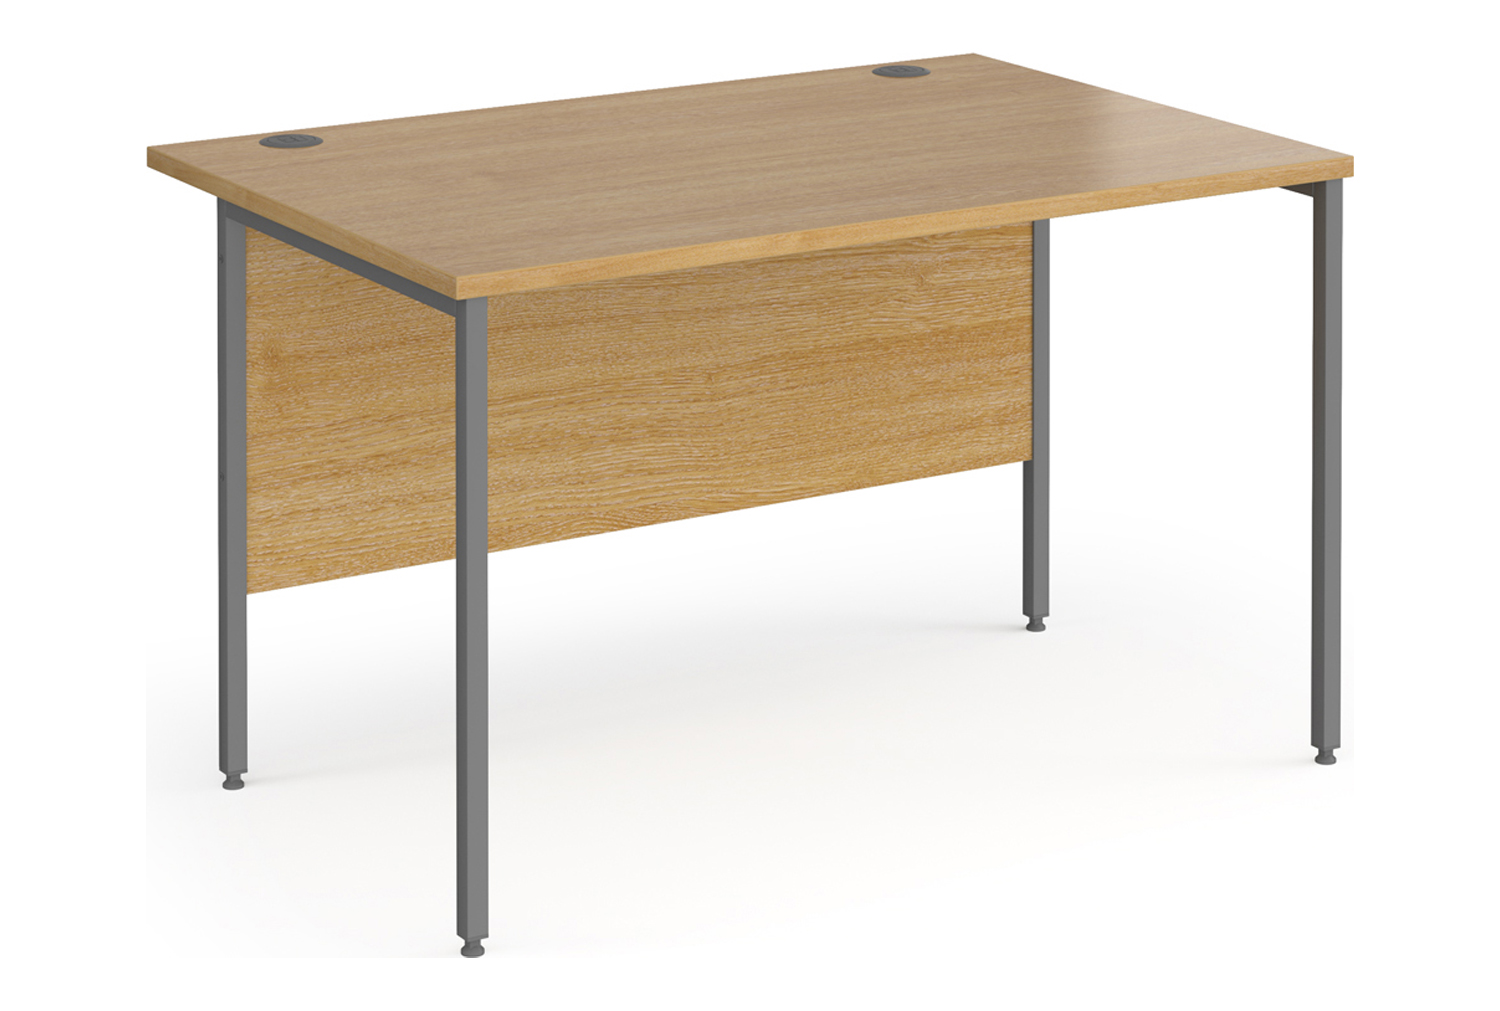 Value Line Classic+ Rectangular H-Leg Office Desk (Graphite Leg), 120wx80dx73h (cm), Oak, Express Delivery